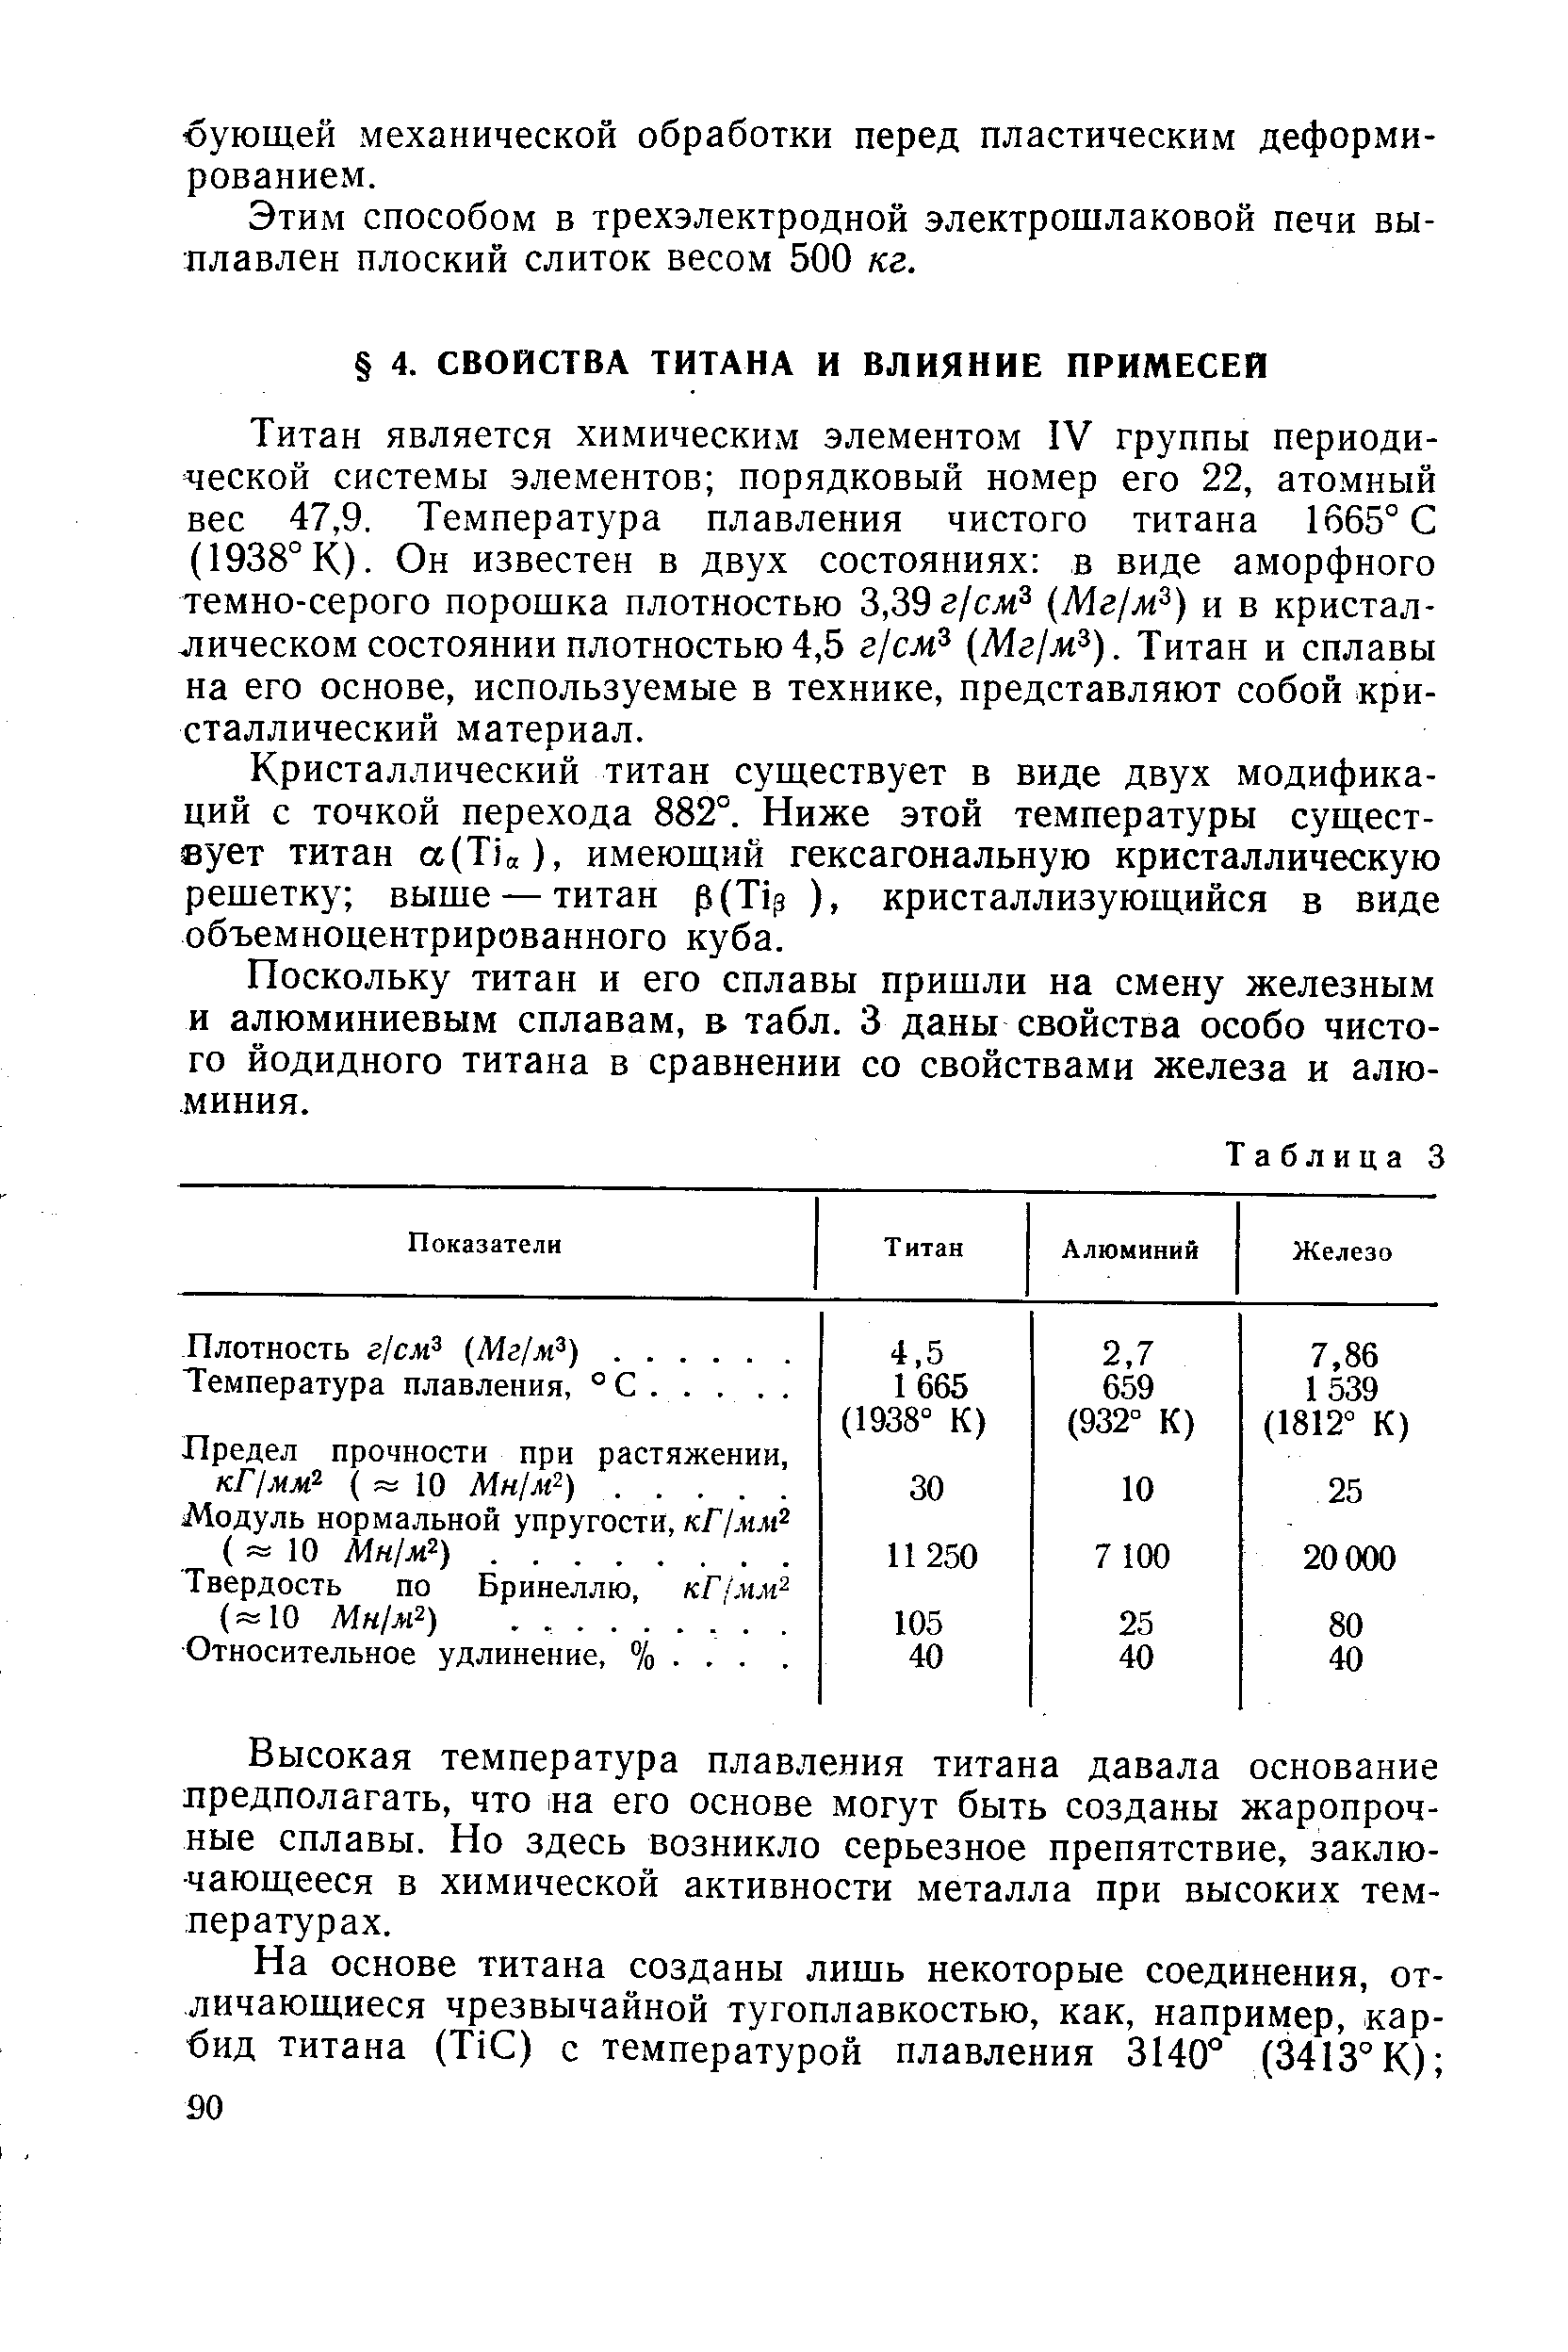 Титан является химическим элементом IV группы периодической системы элементов порядковый номер его 22, атомный вес 47,9. Температура плавления чистого титана 1665° С (1938° КЬ Он известен в двух состояниях в виде аморфного темно-серого порошка плотностью 3,39 г/сл Мг м ) и в кристаллическом состоянии плотностью 4,5 zj M Мг м ). Титан и сплавы на его основе, используемые в технике, представляют собой кристаллический материал.
